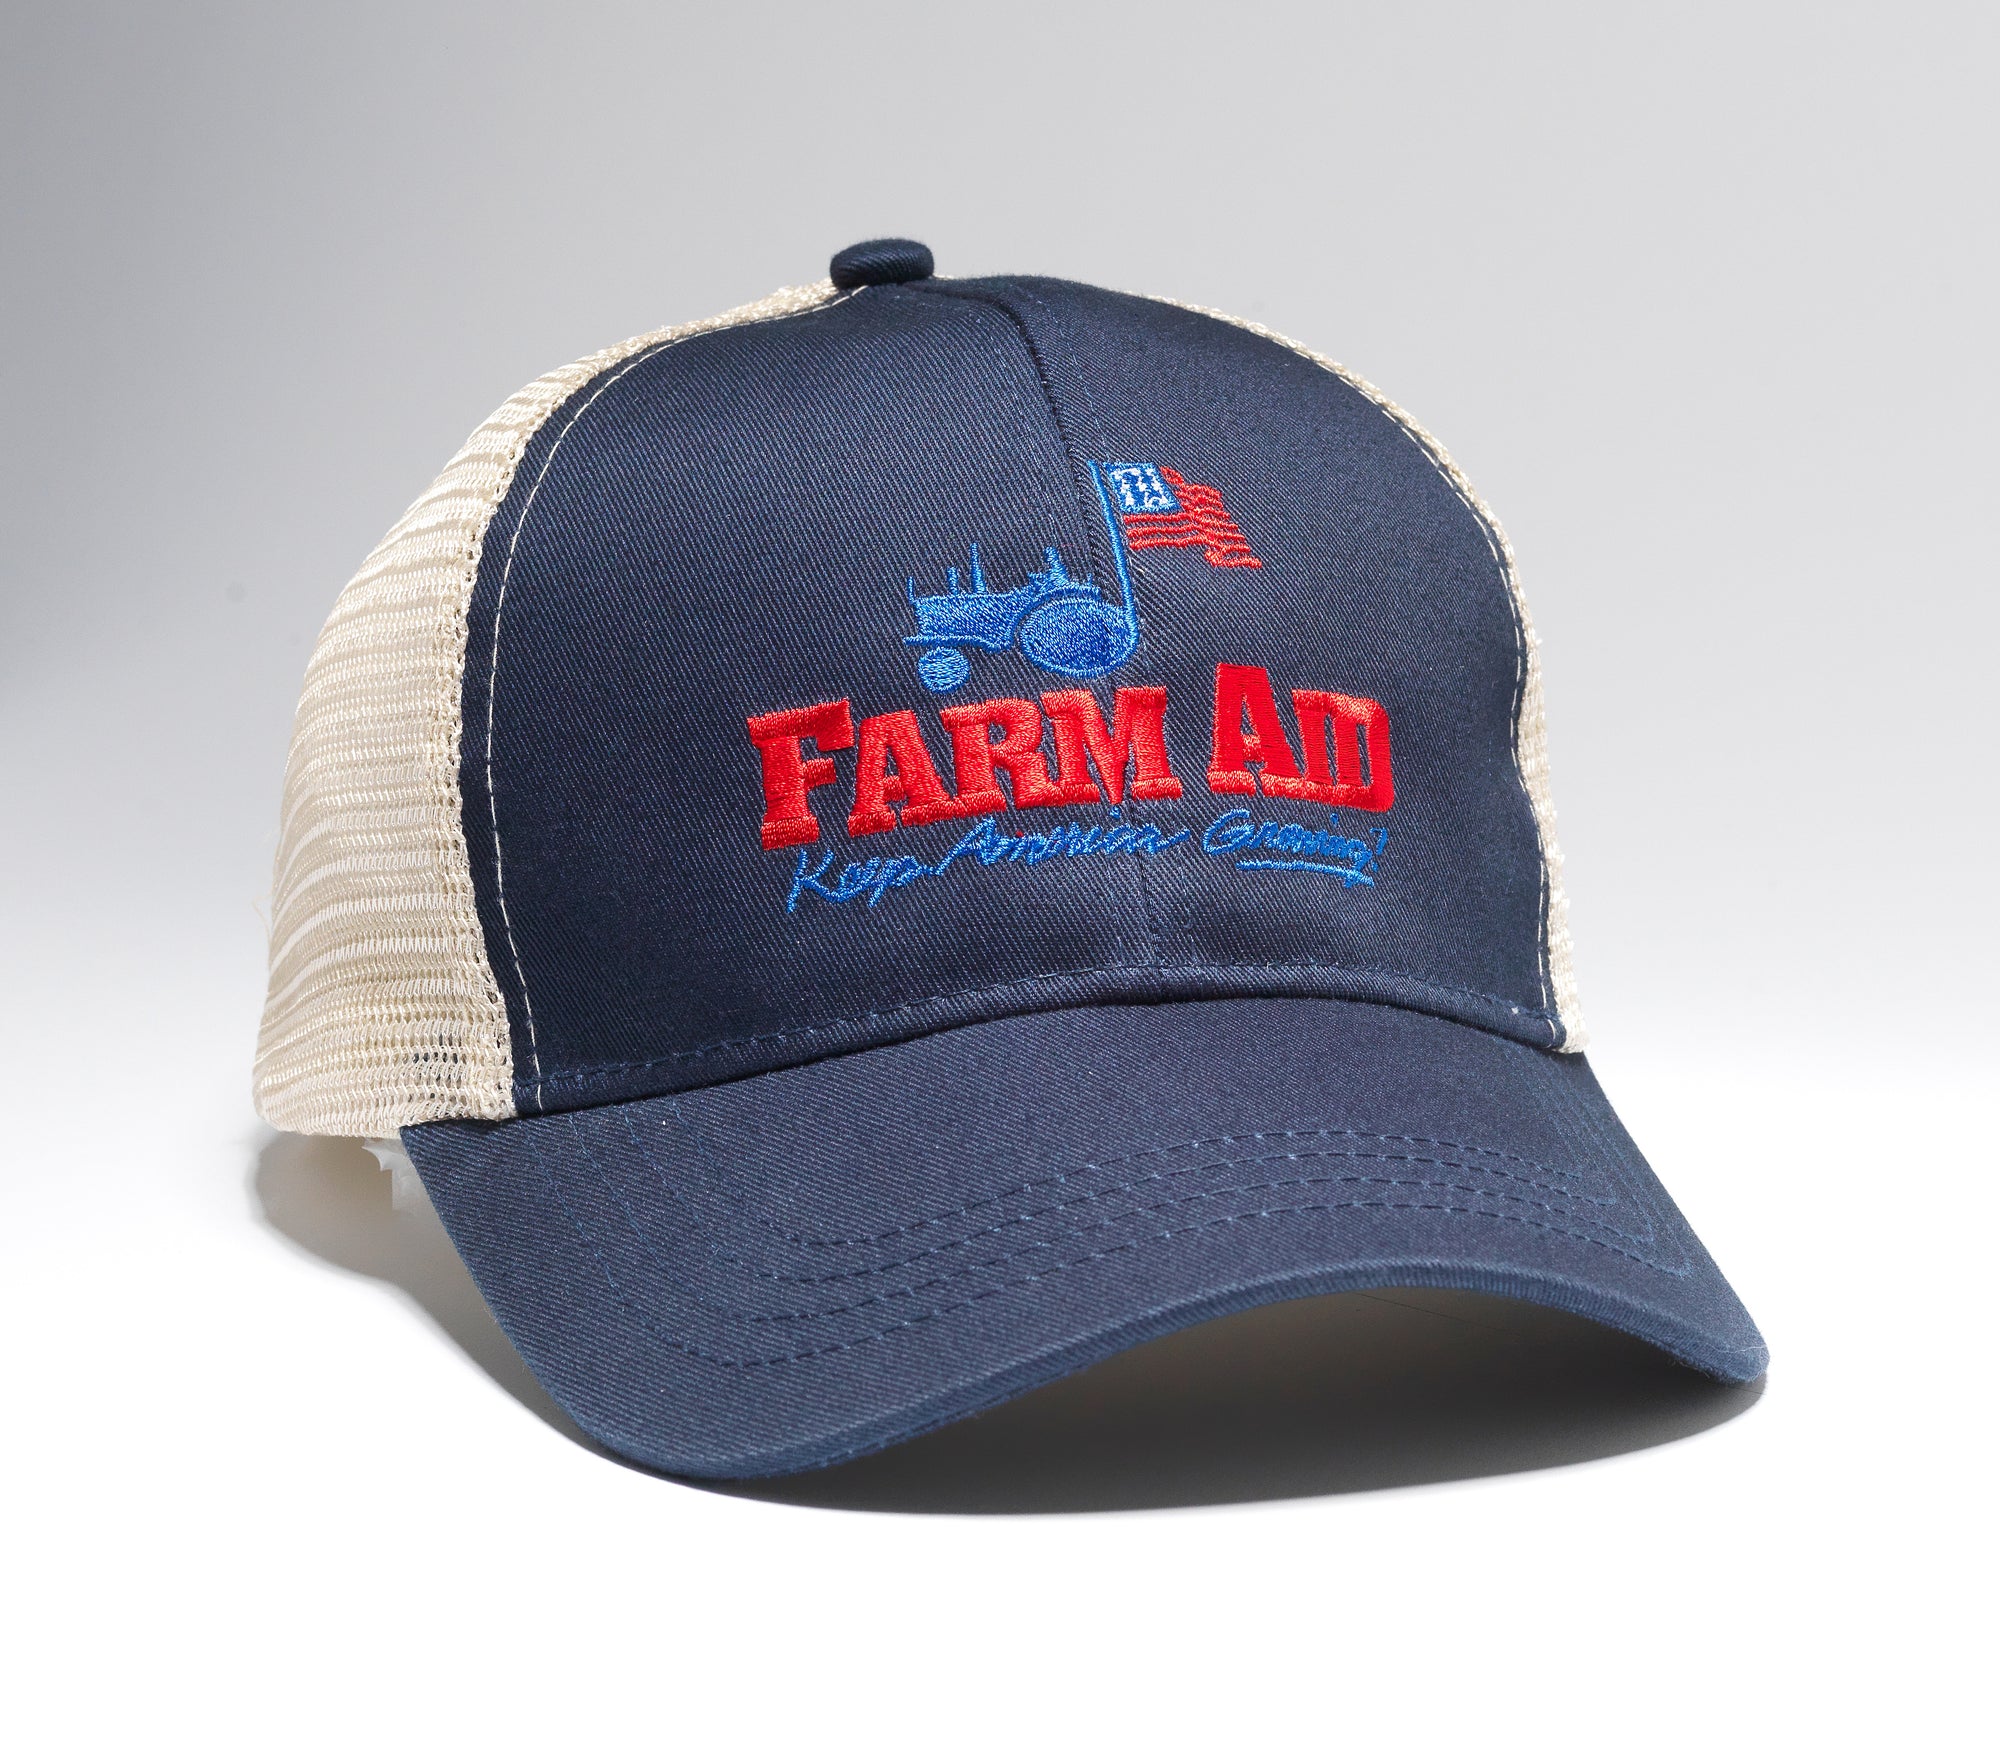 Farm Aid hat